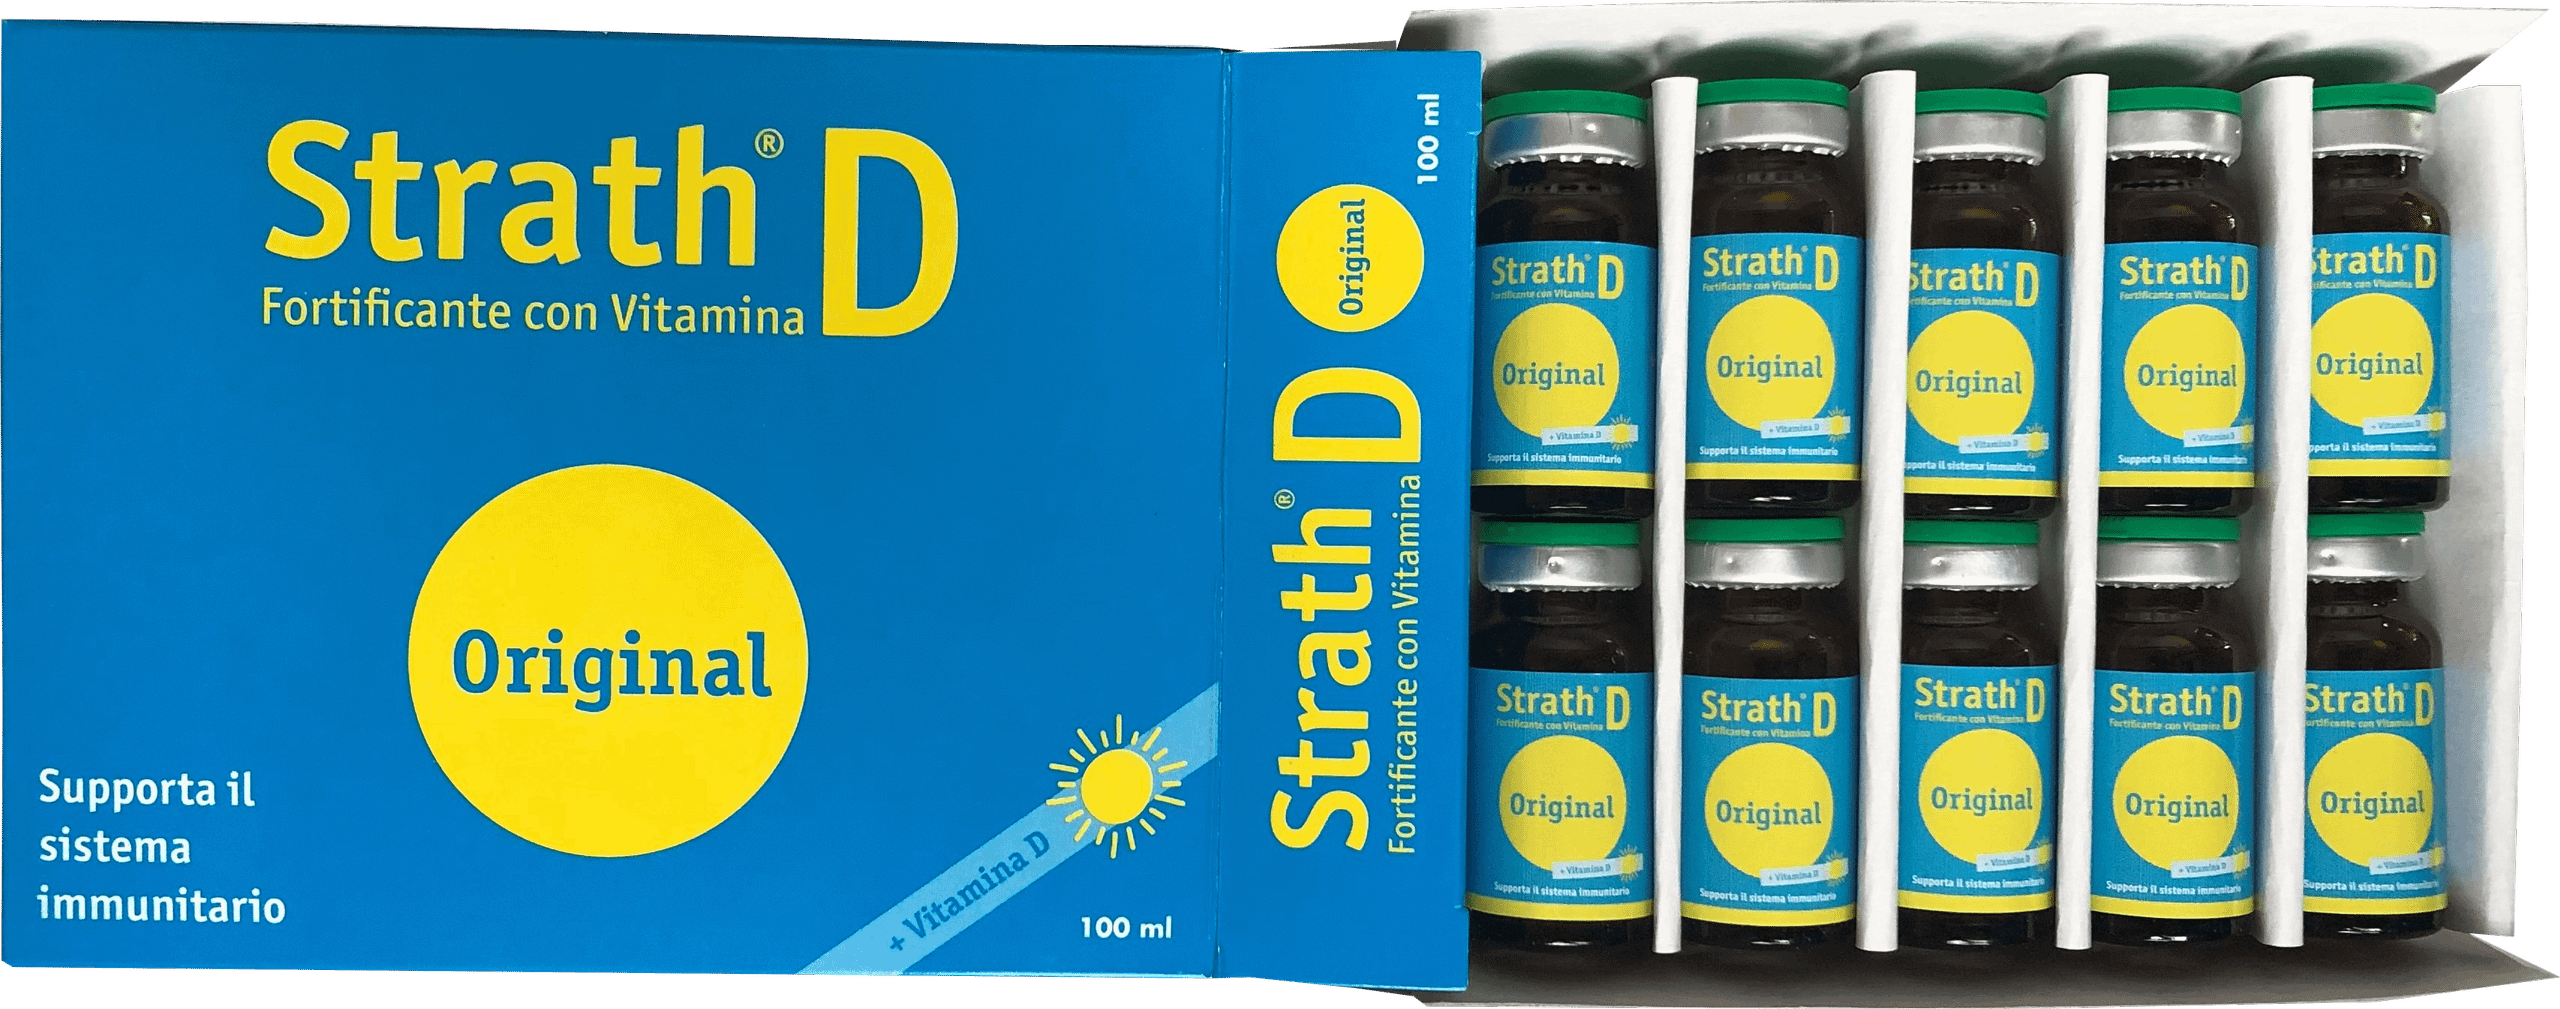 STRATH D - Fortificante con vitamina D